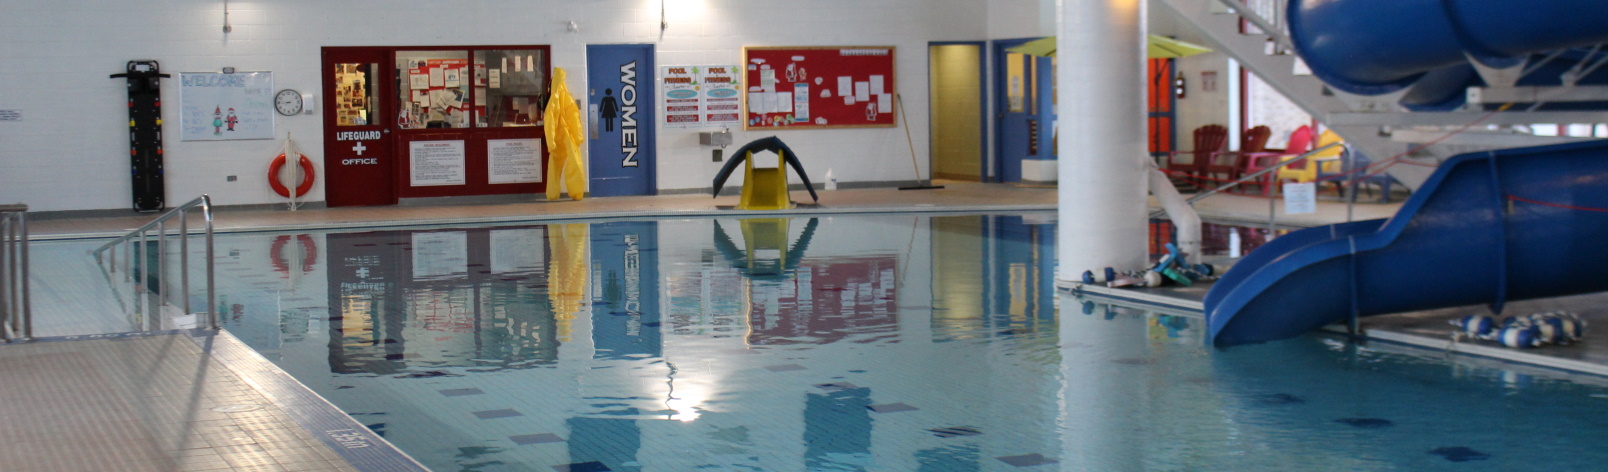 Empty interior of the Pool